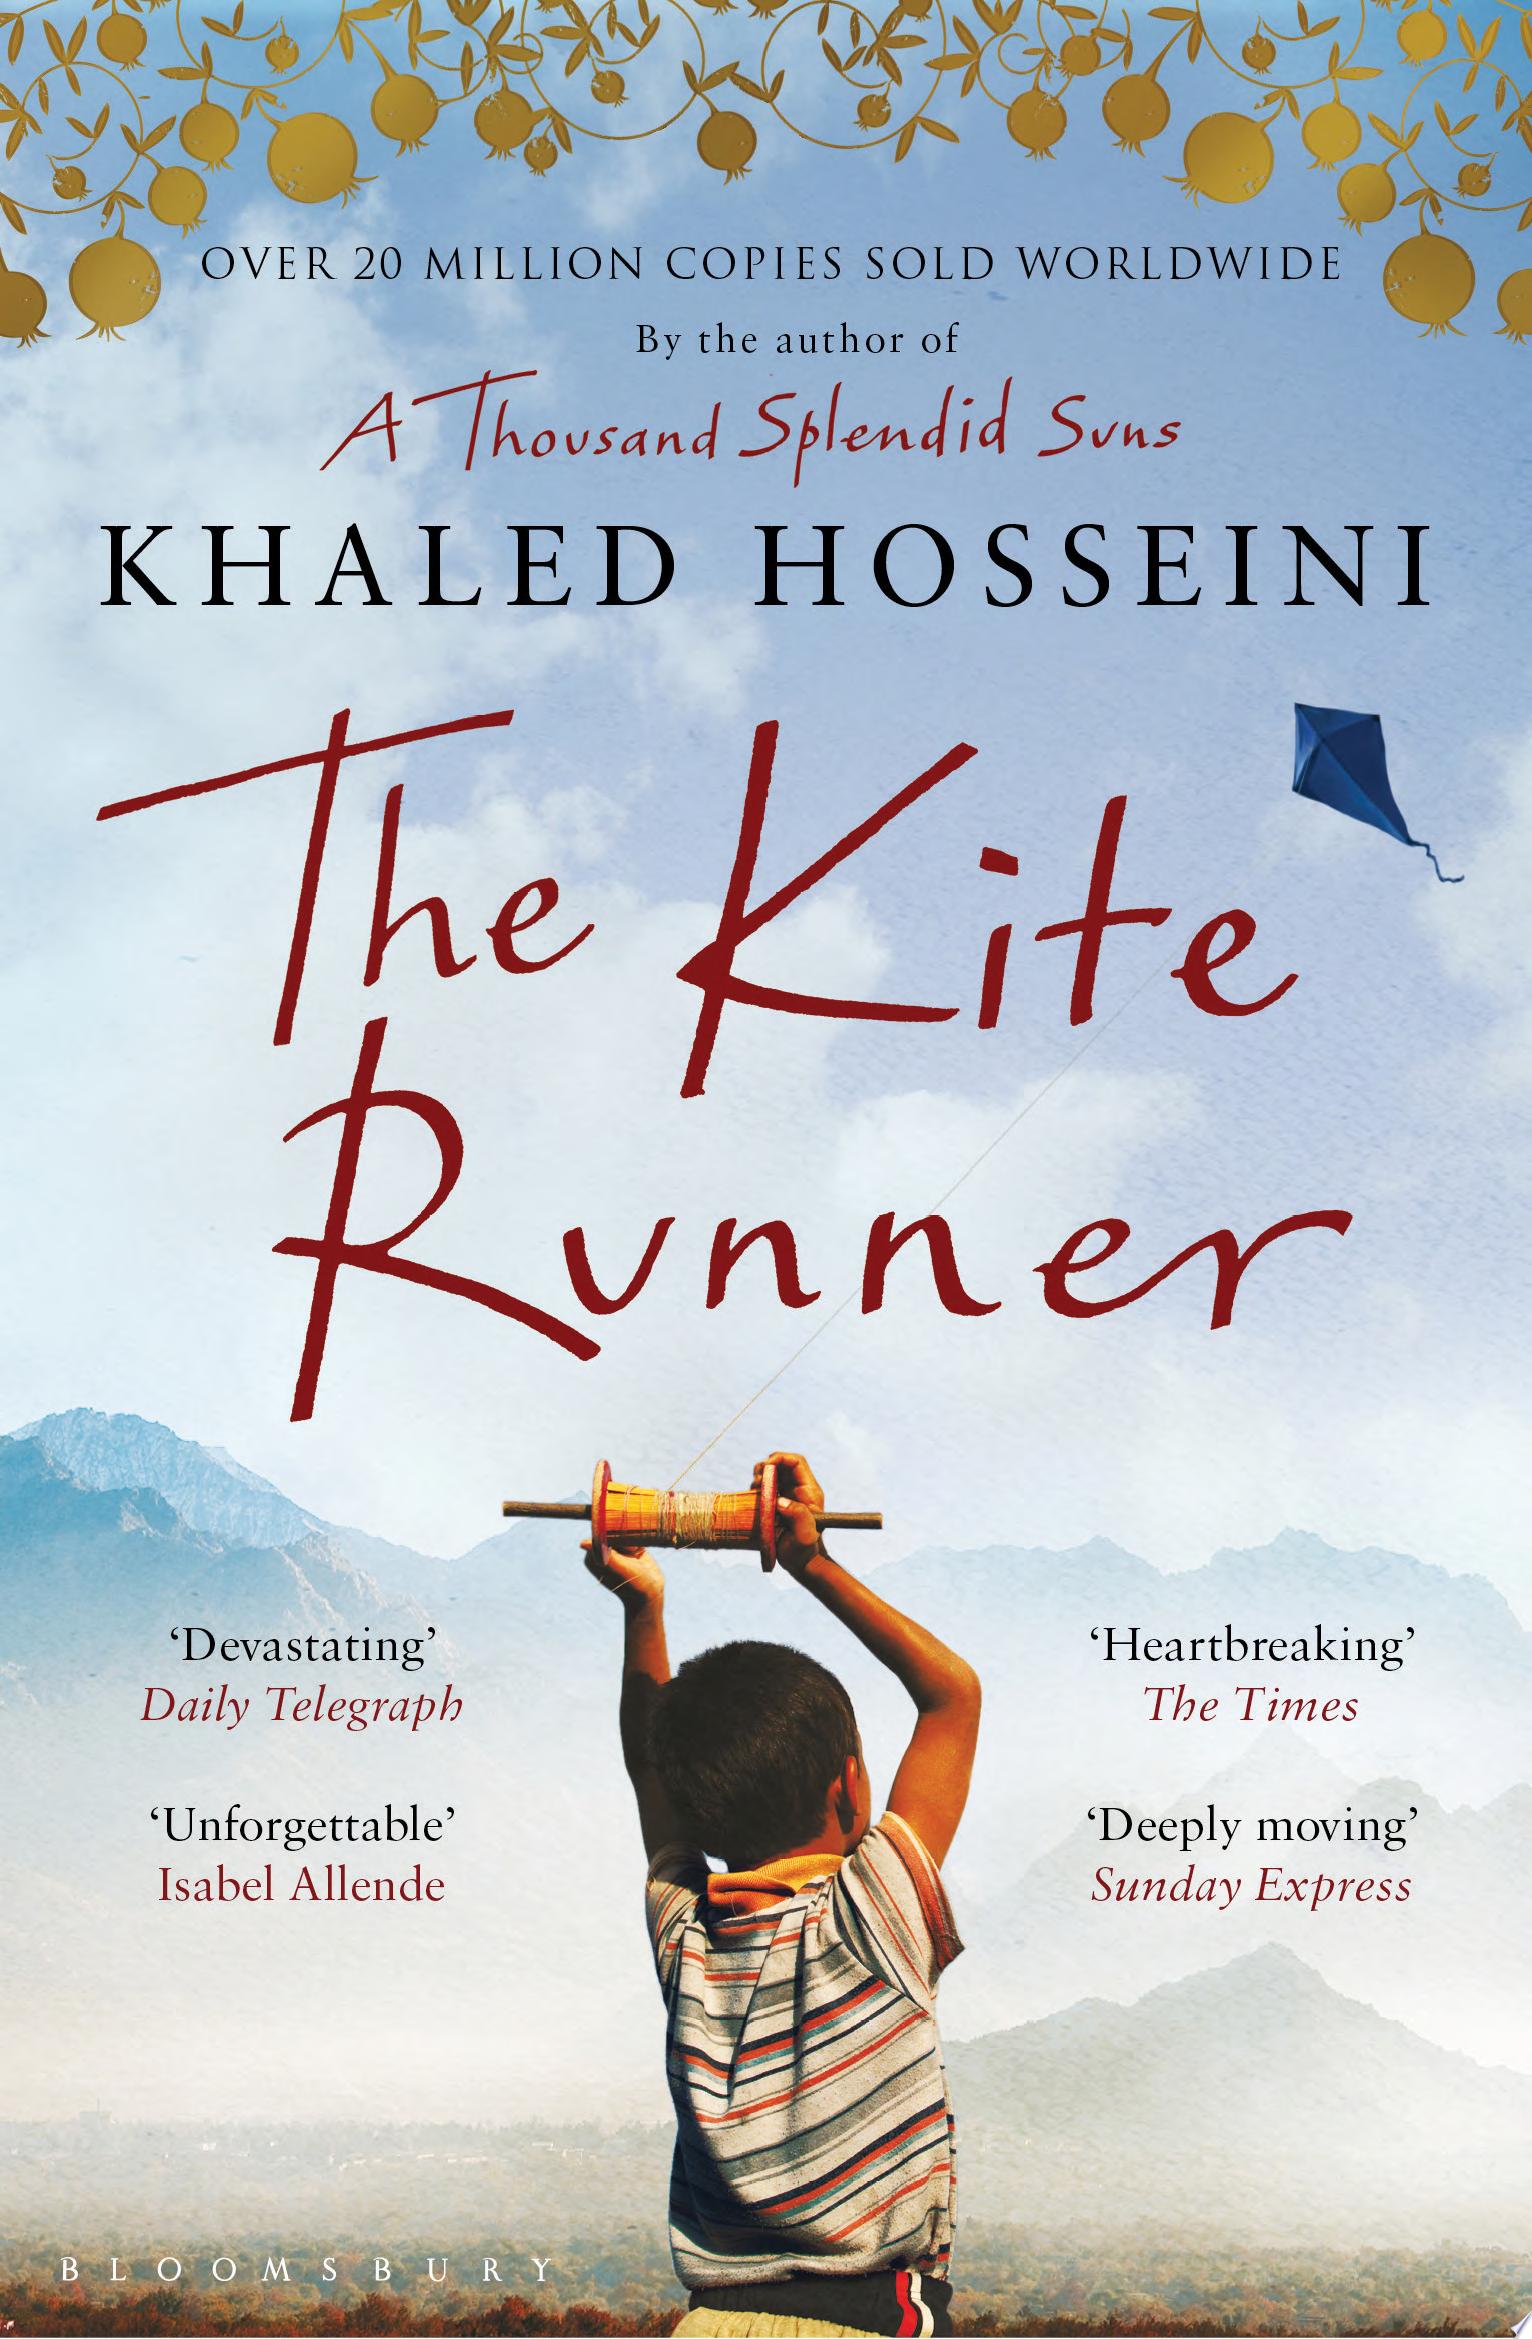 Image for "The Kite Runner"